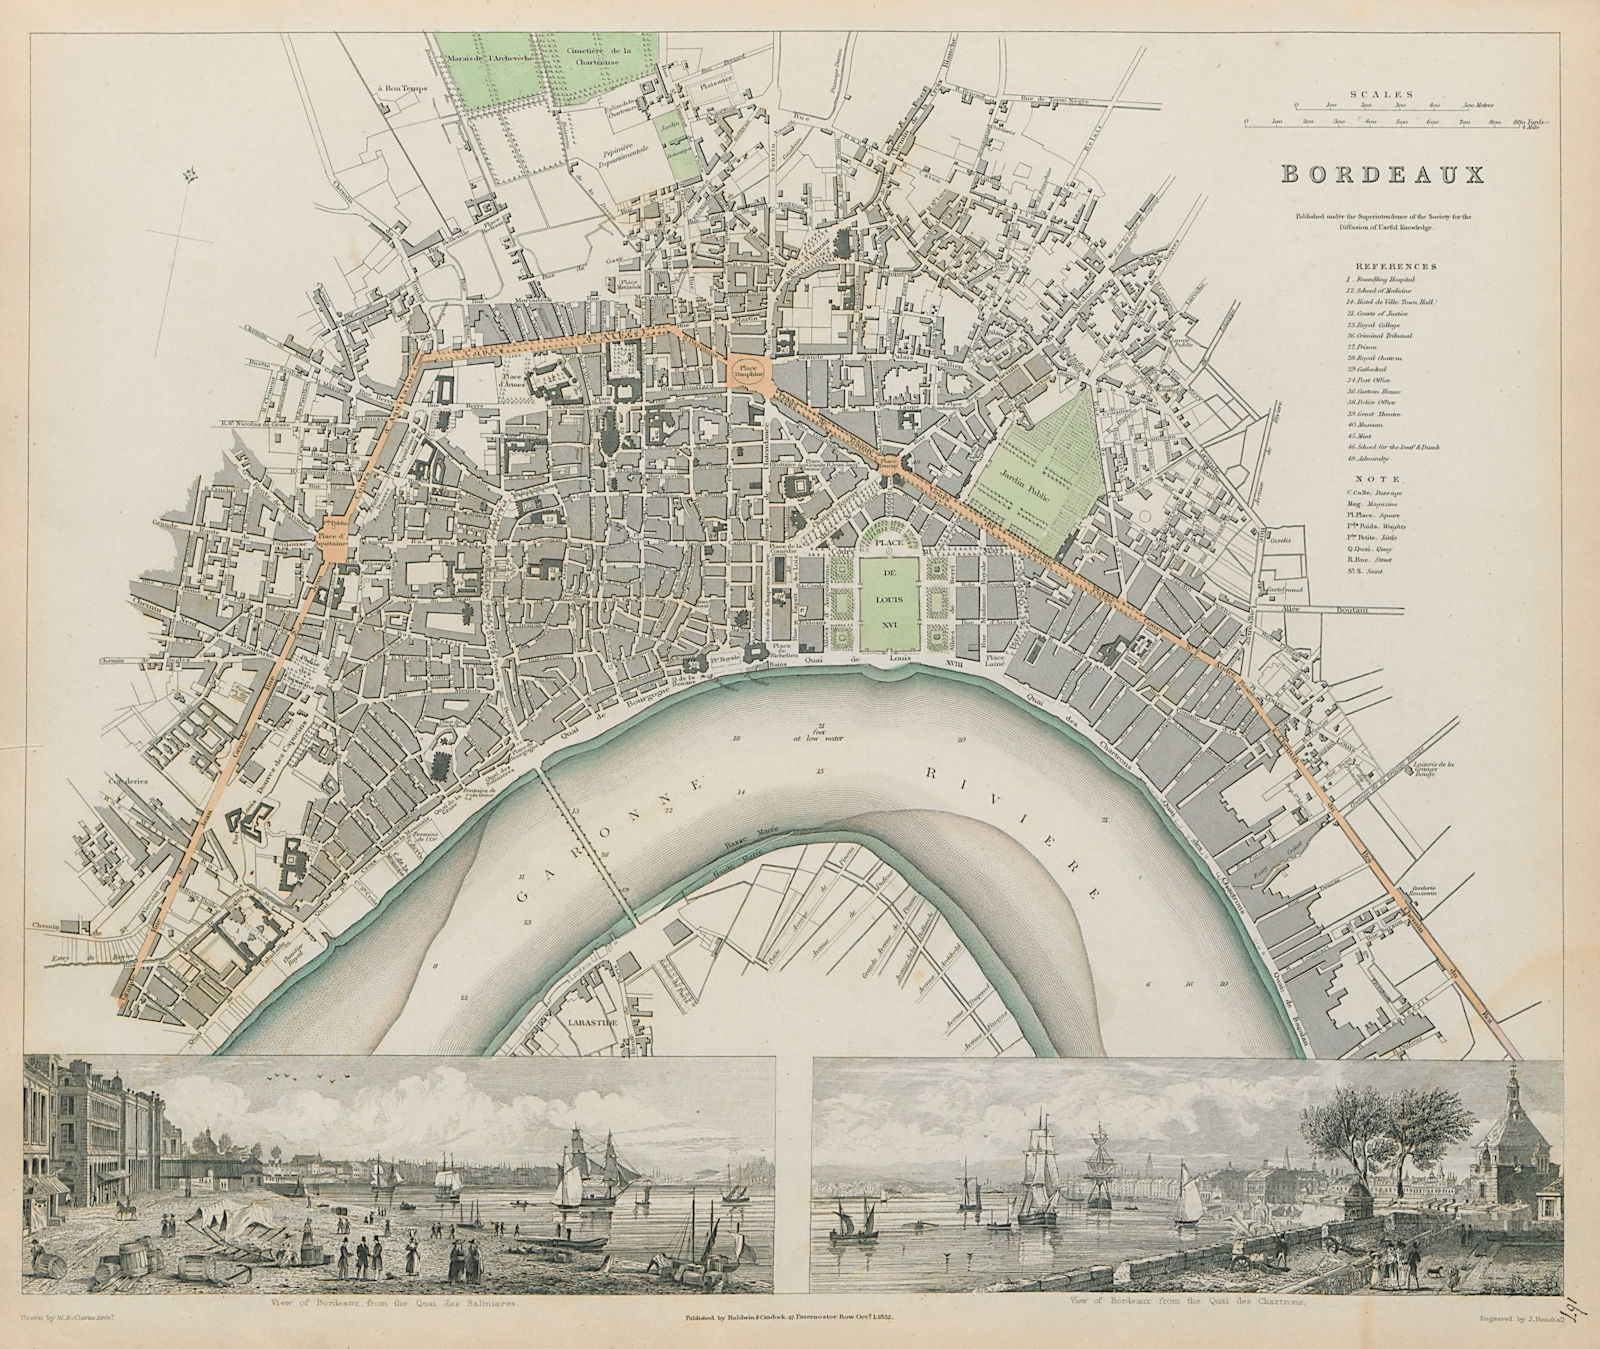 Associate Product BORDEAUX Antique city town map plan. Quai Salinieres Chartrons SDUK 1844